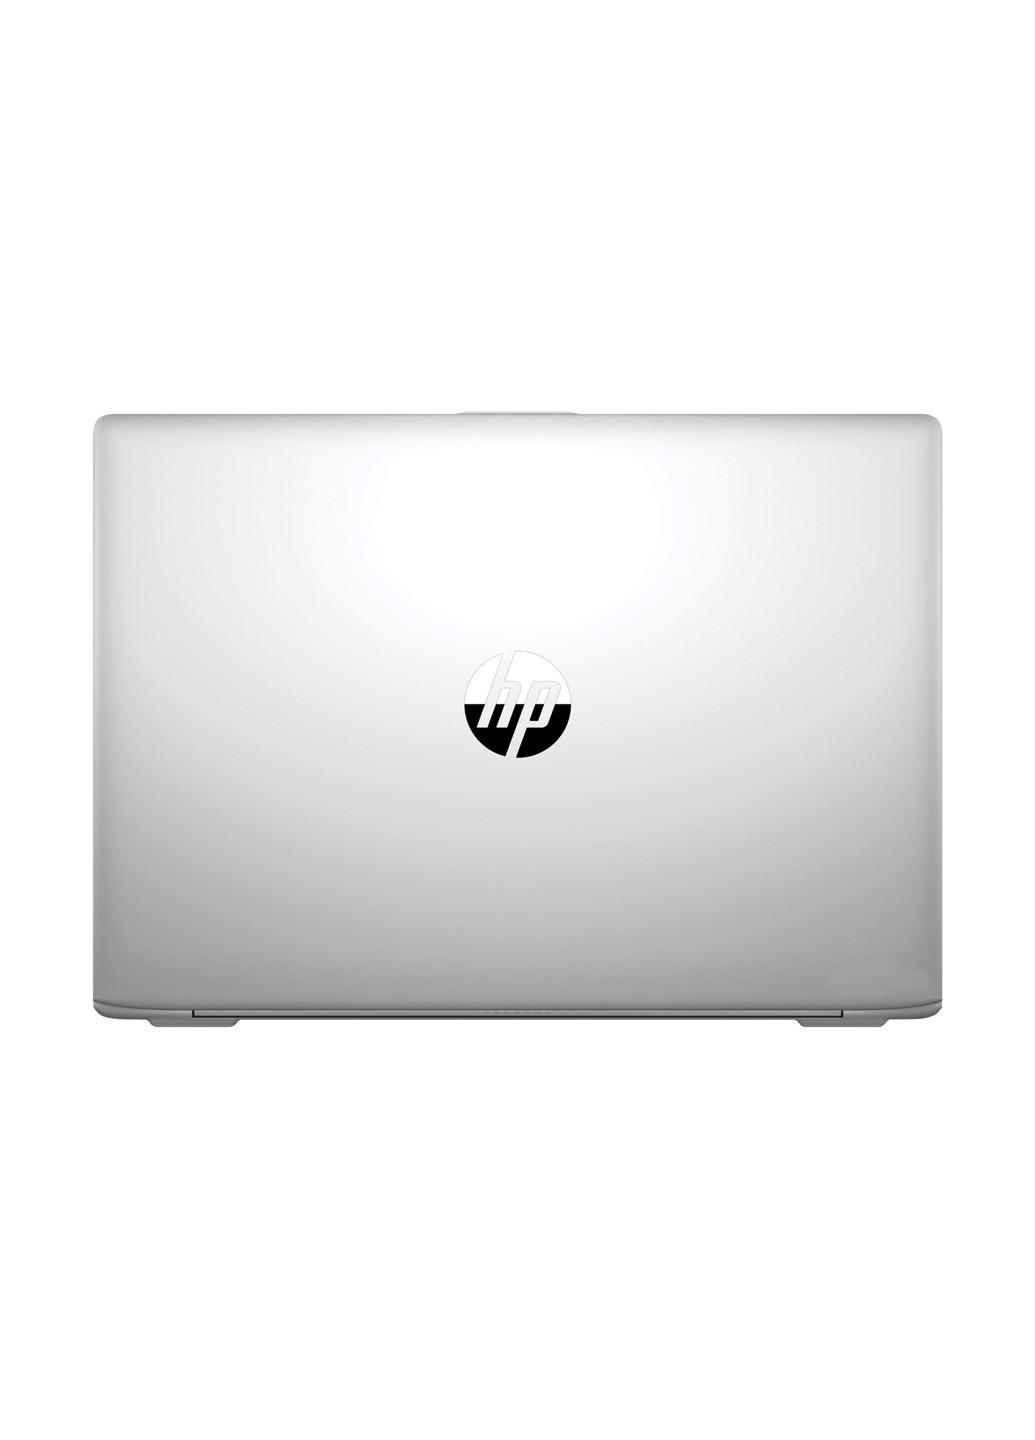 Ноутбук HP probook 440 g5 (2xz66es) silver (136402400)